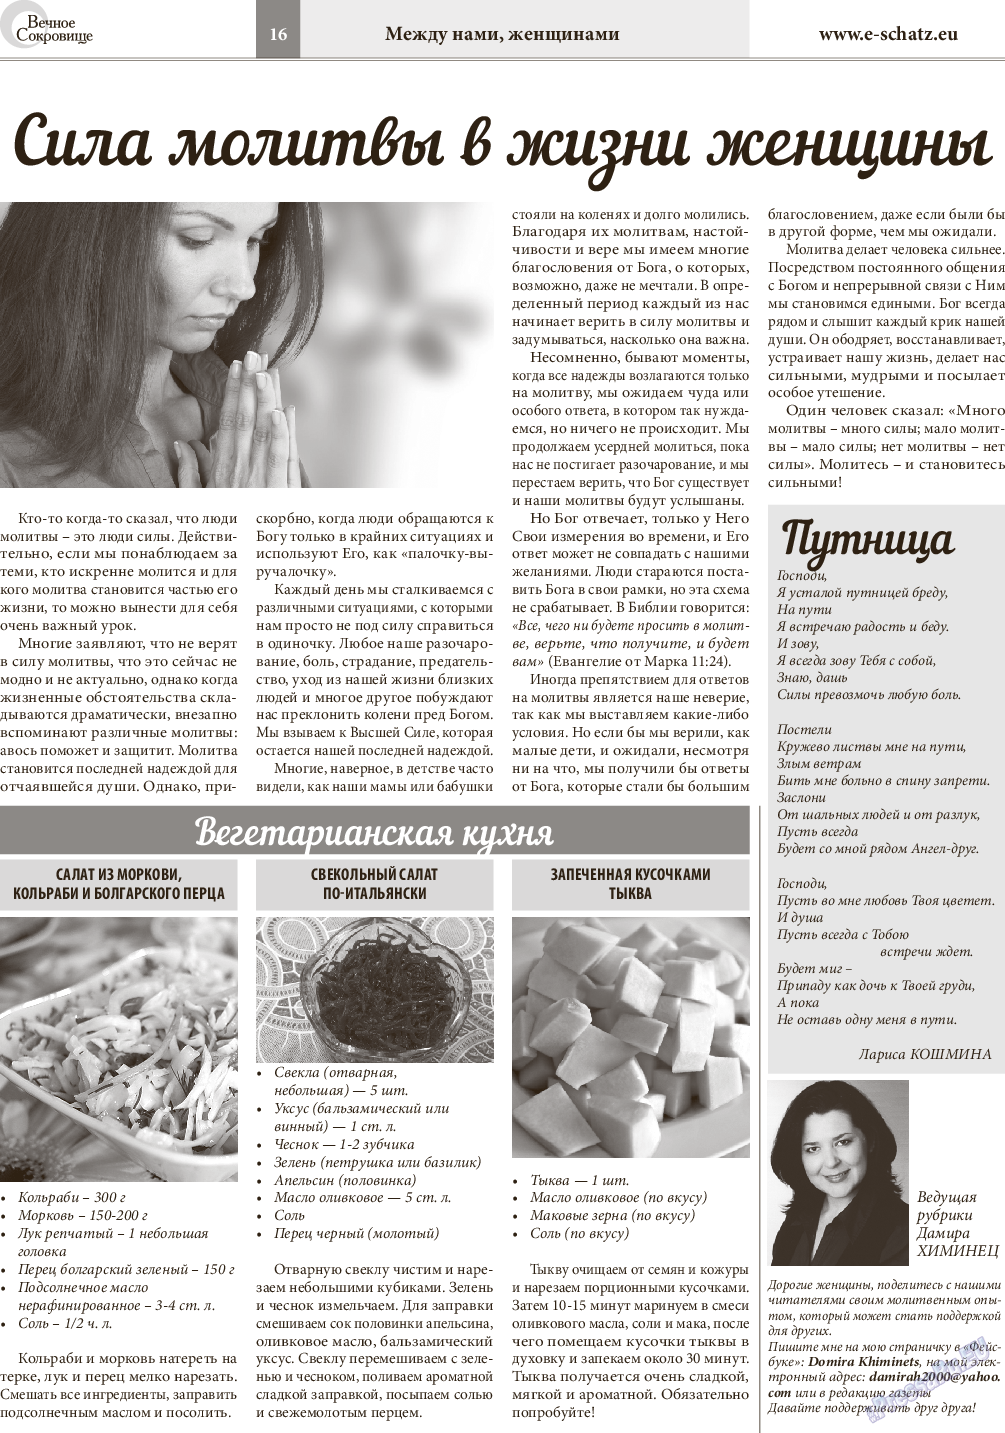 Вечное сокровище, газета. 2015 №5 стр.16